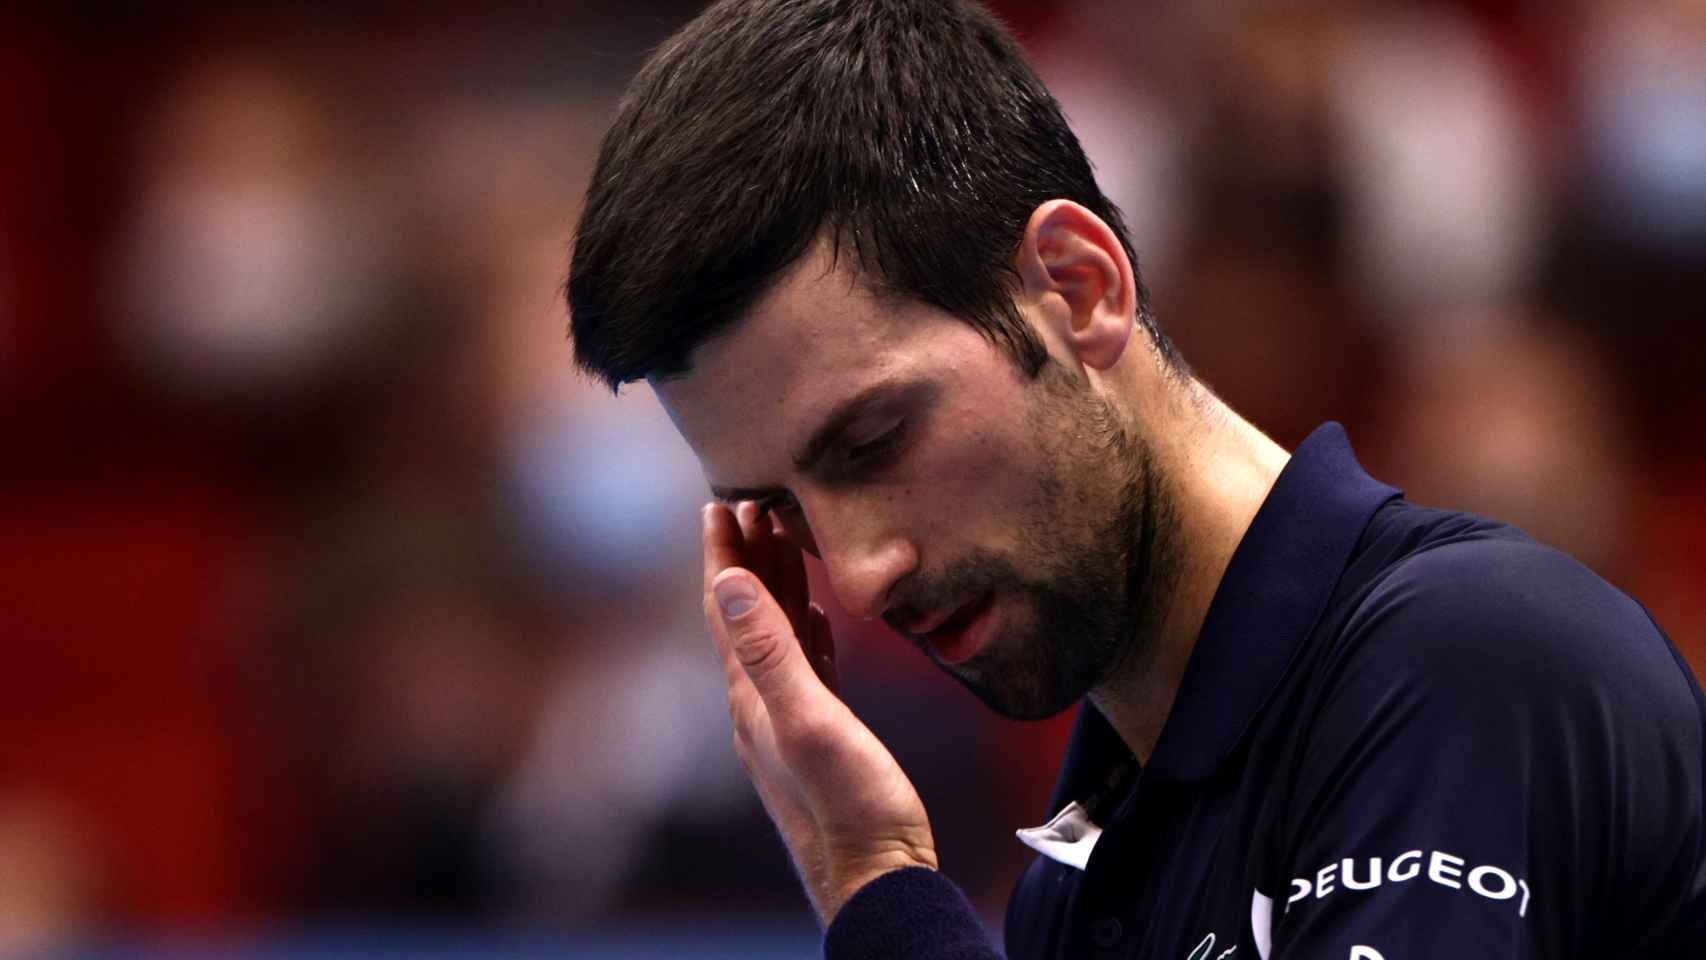 Djokovic lamentándose durante un partido